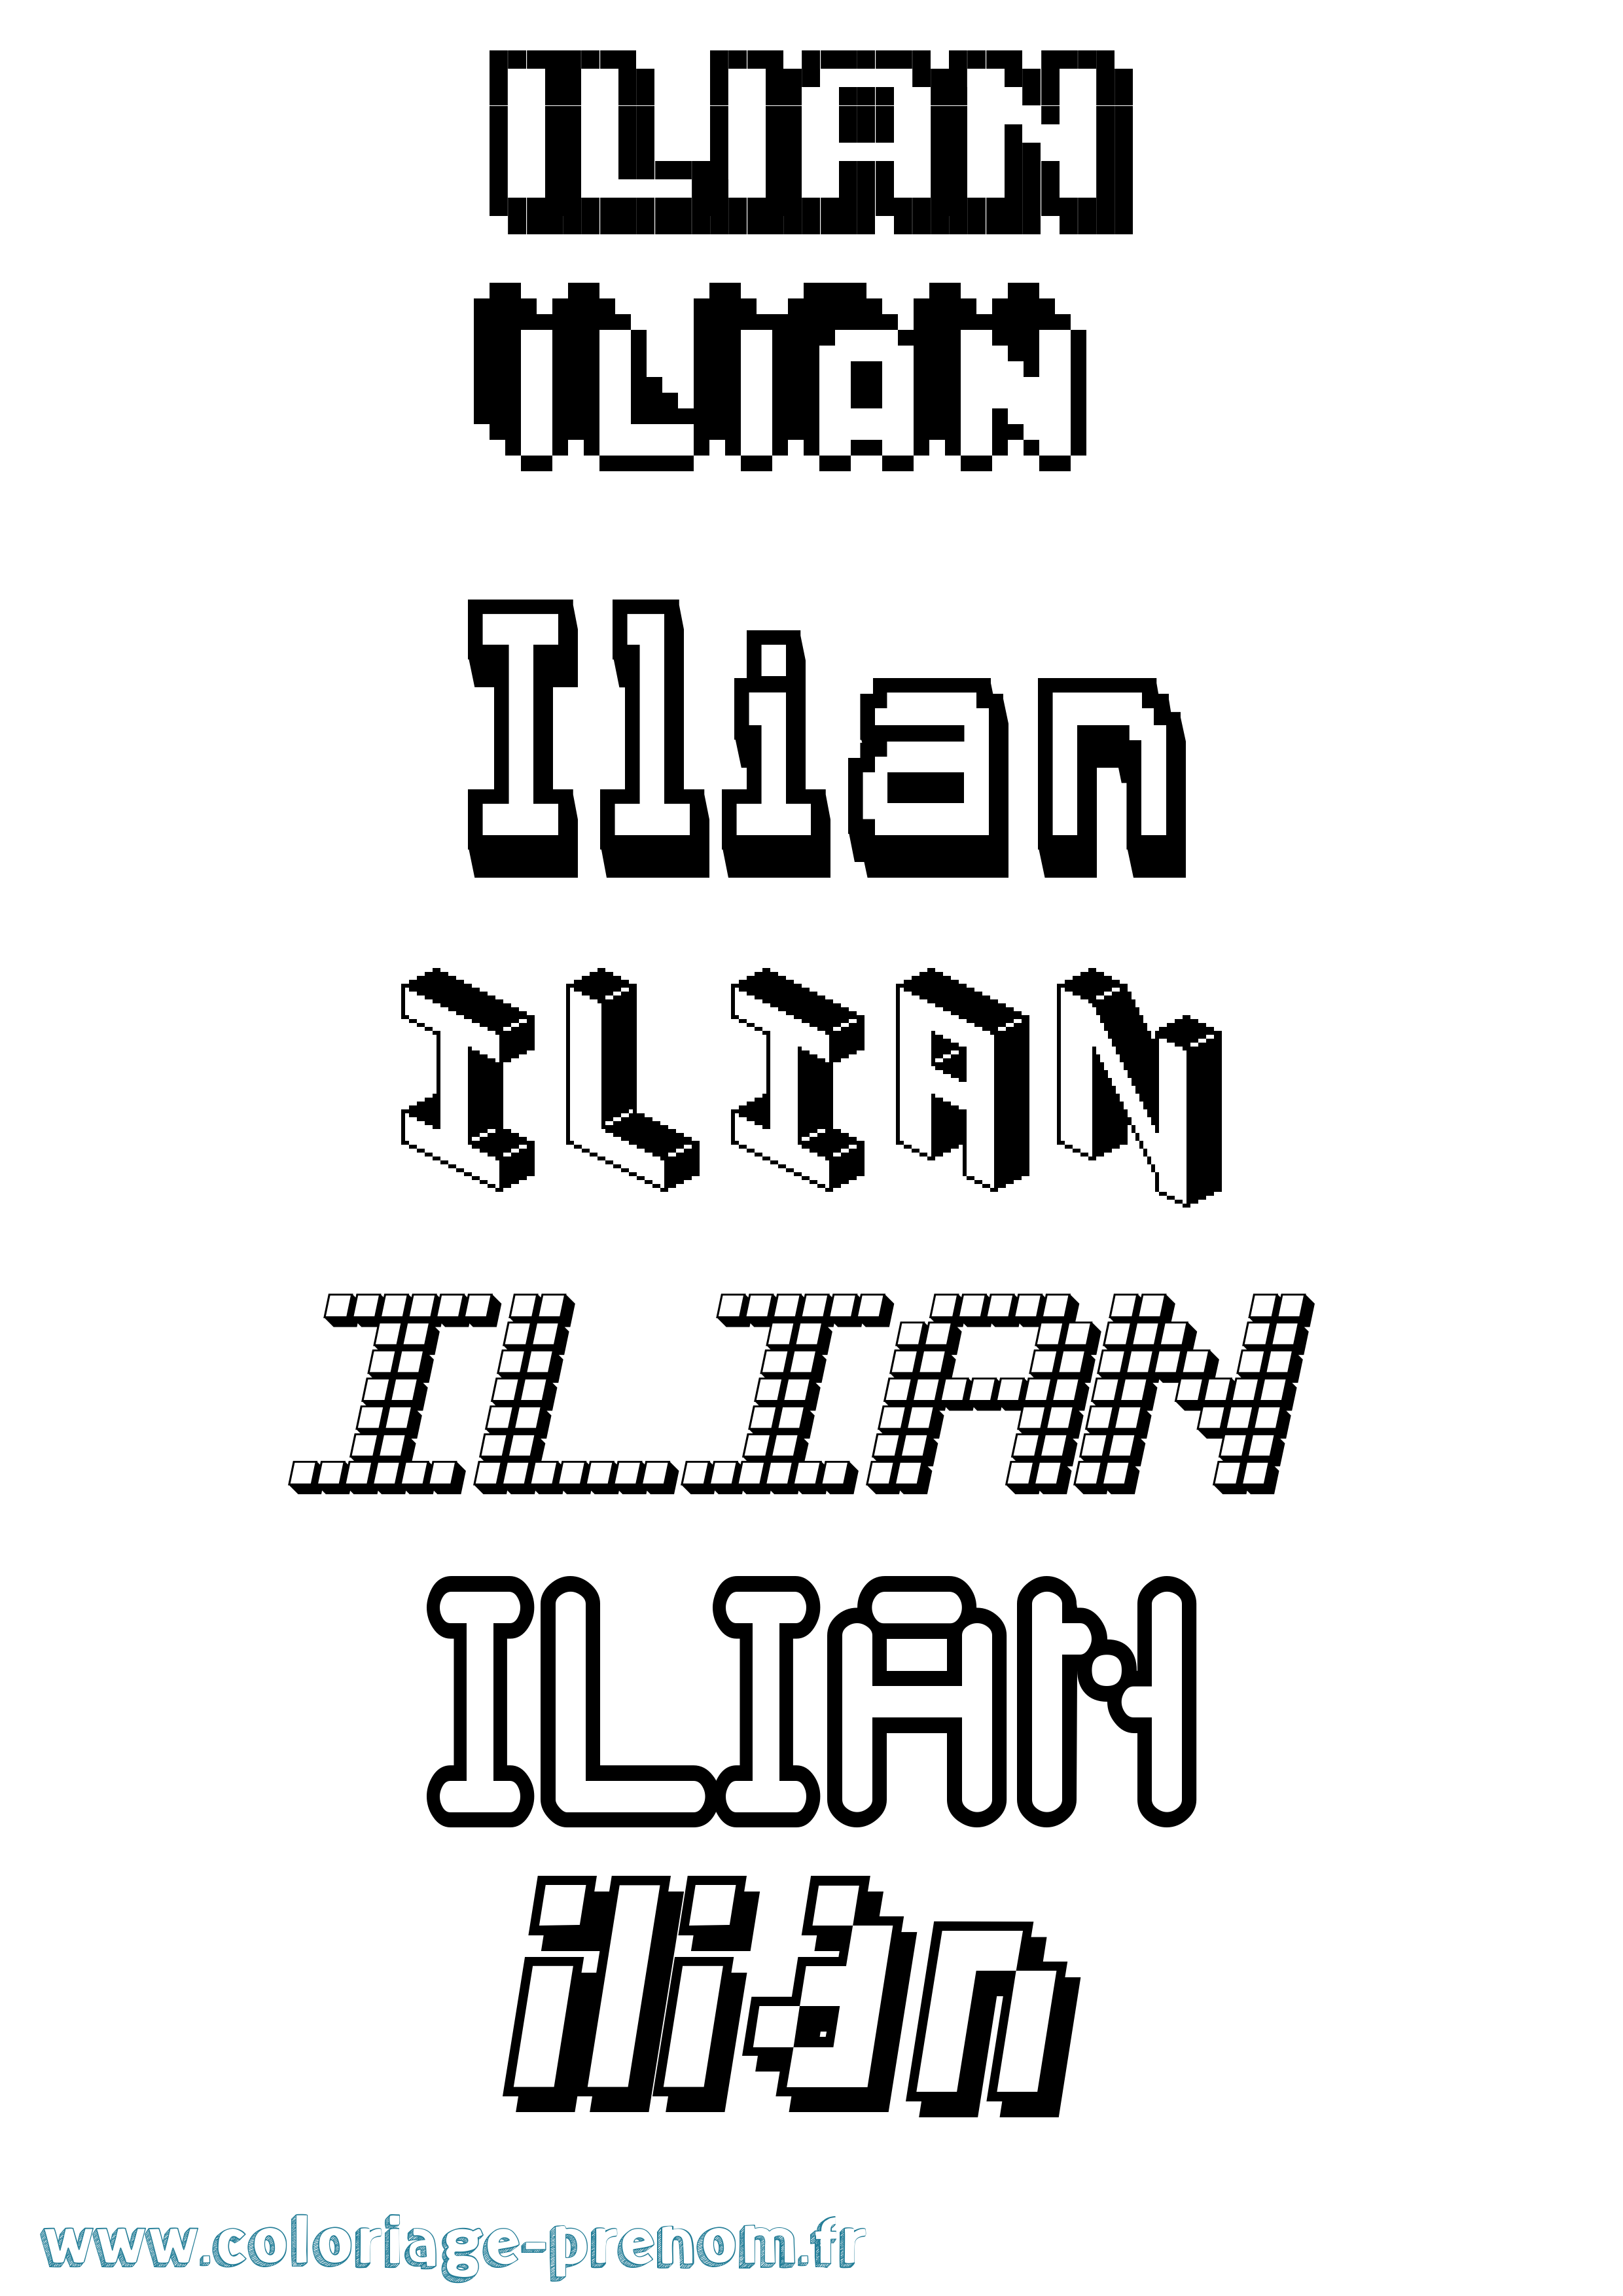 Coloriage prénom Ilian Pixel